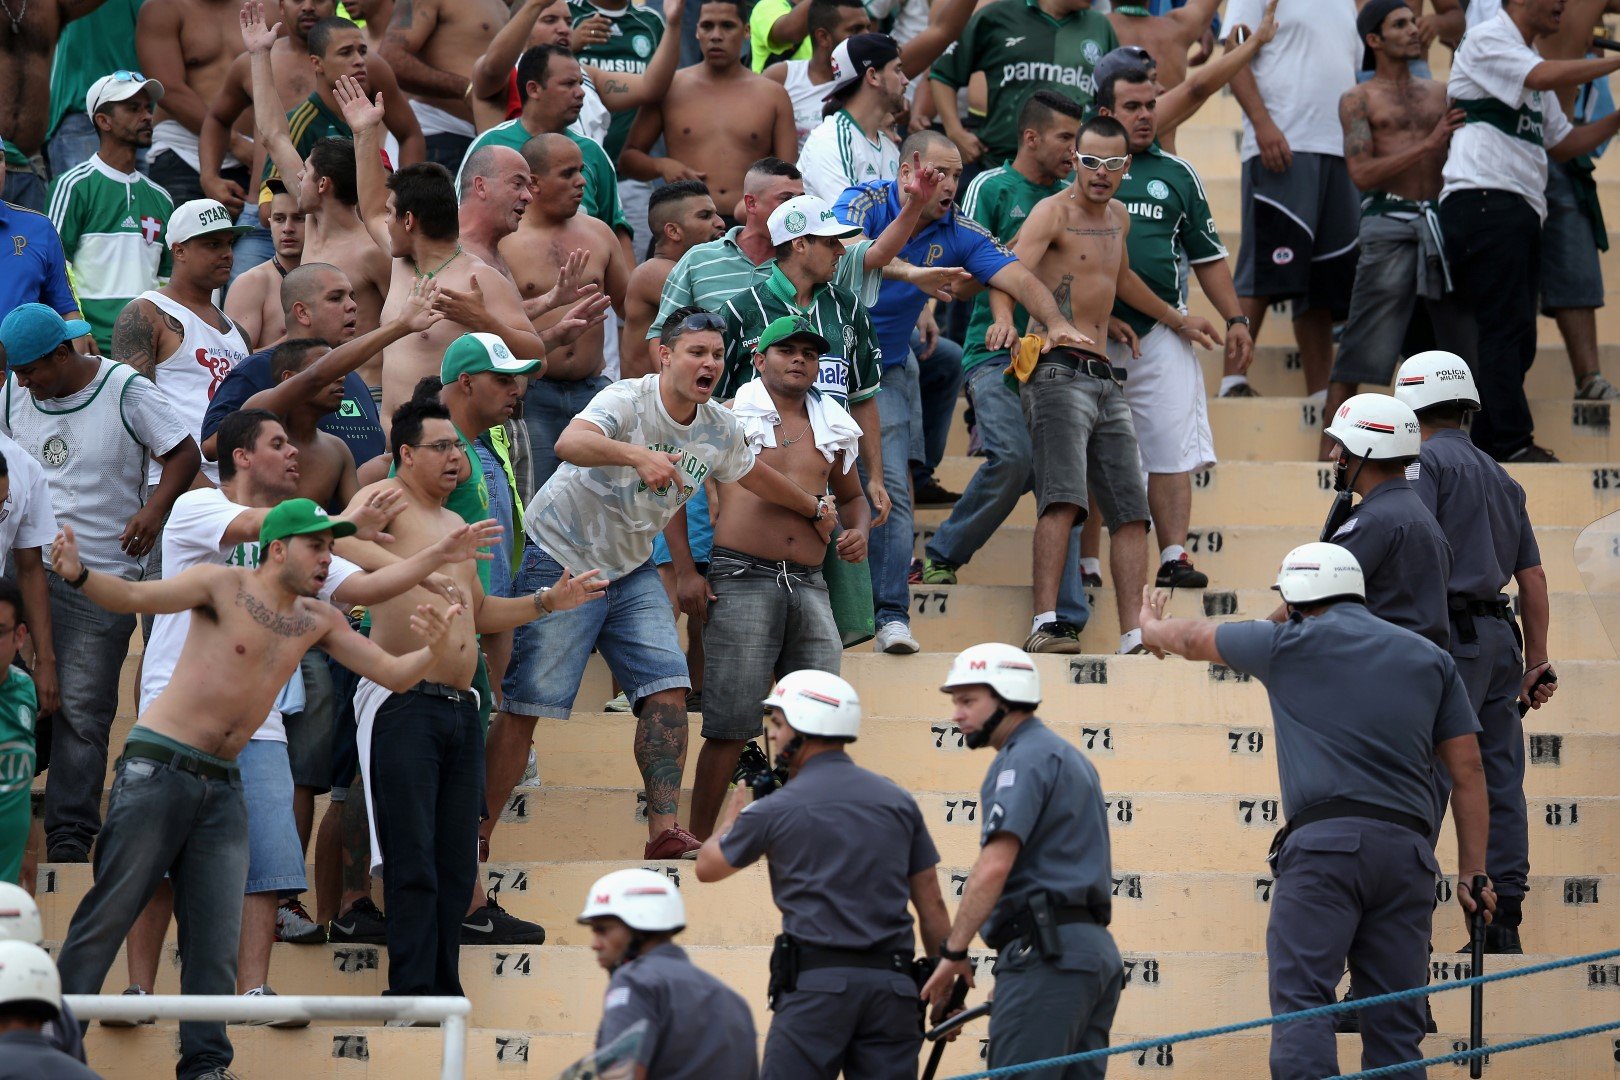 Ултрасите на Палмейрас няма как да останат по-назад - почти всеки мач минава в напрежение между тях и полицията